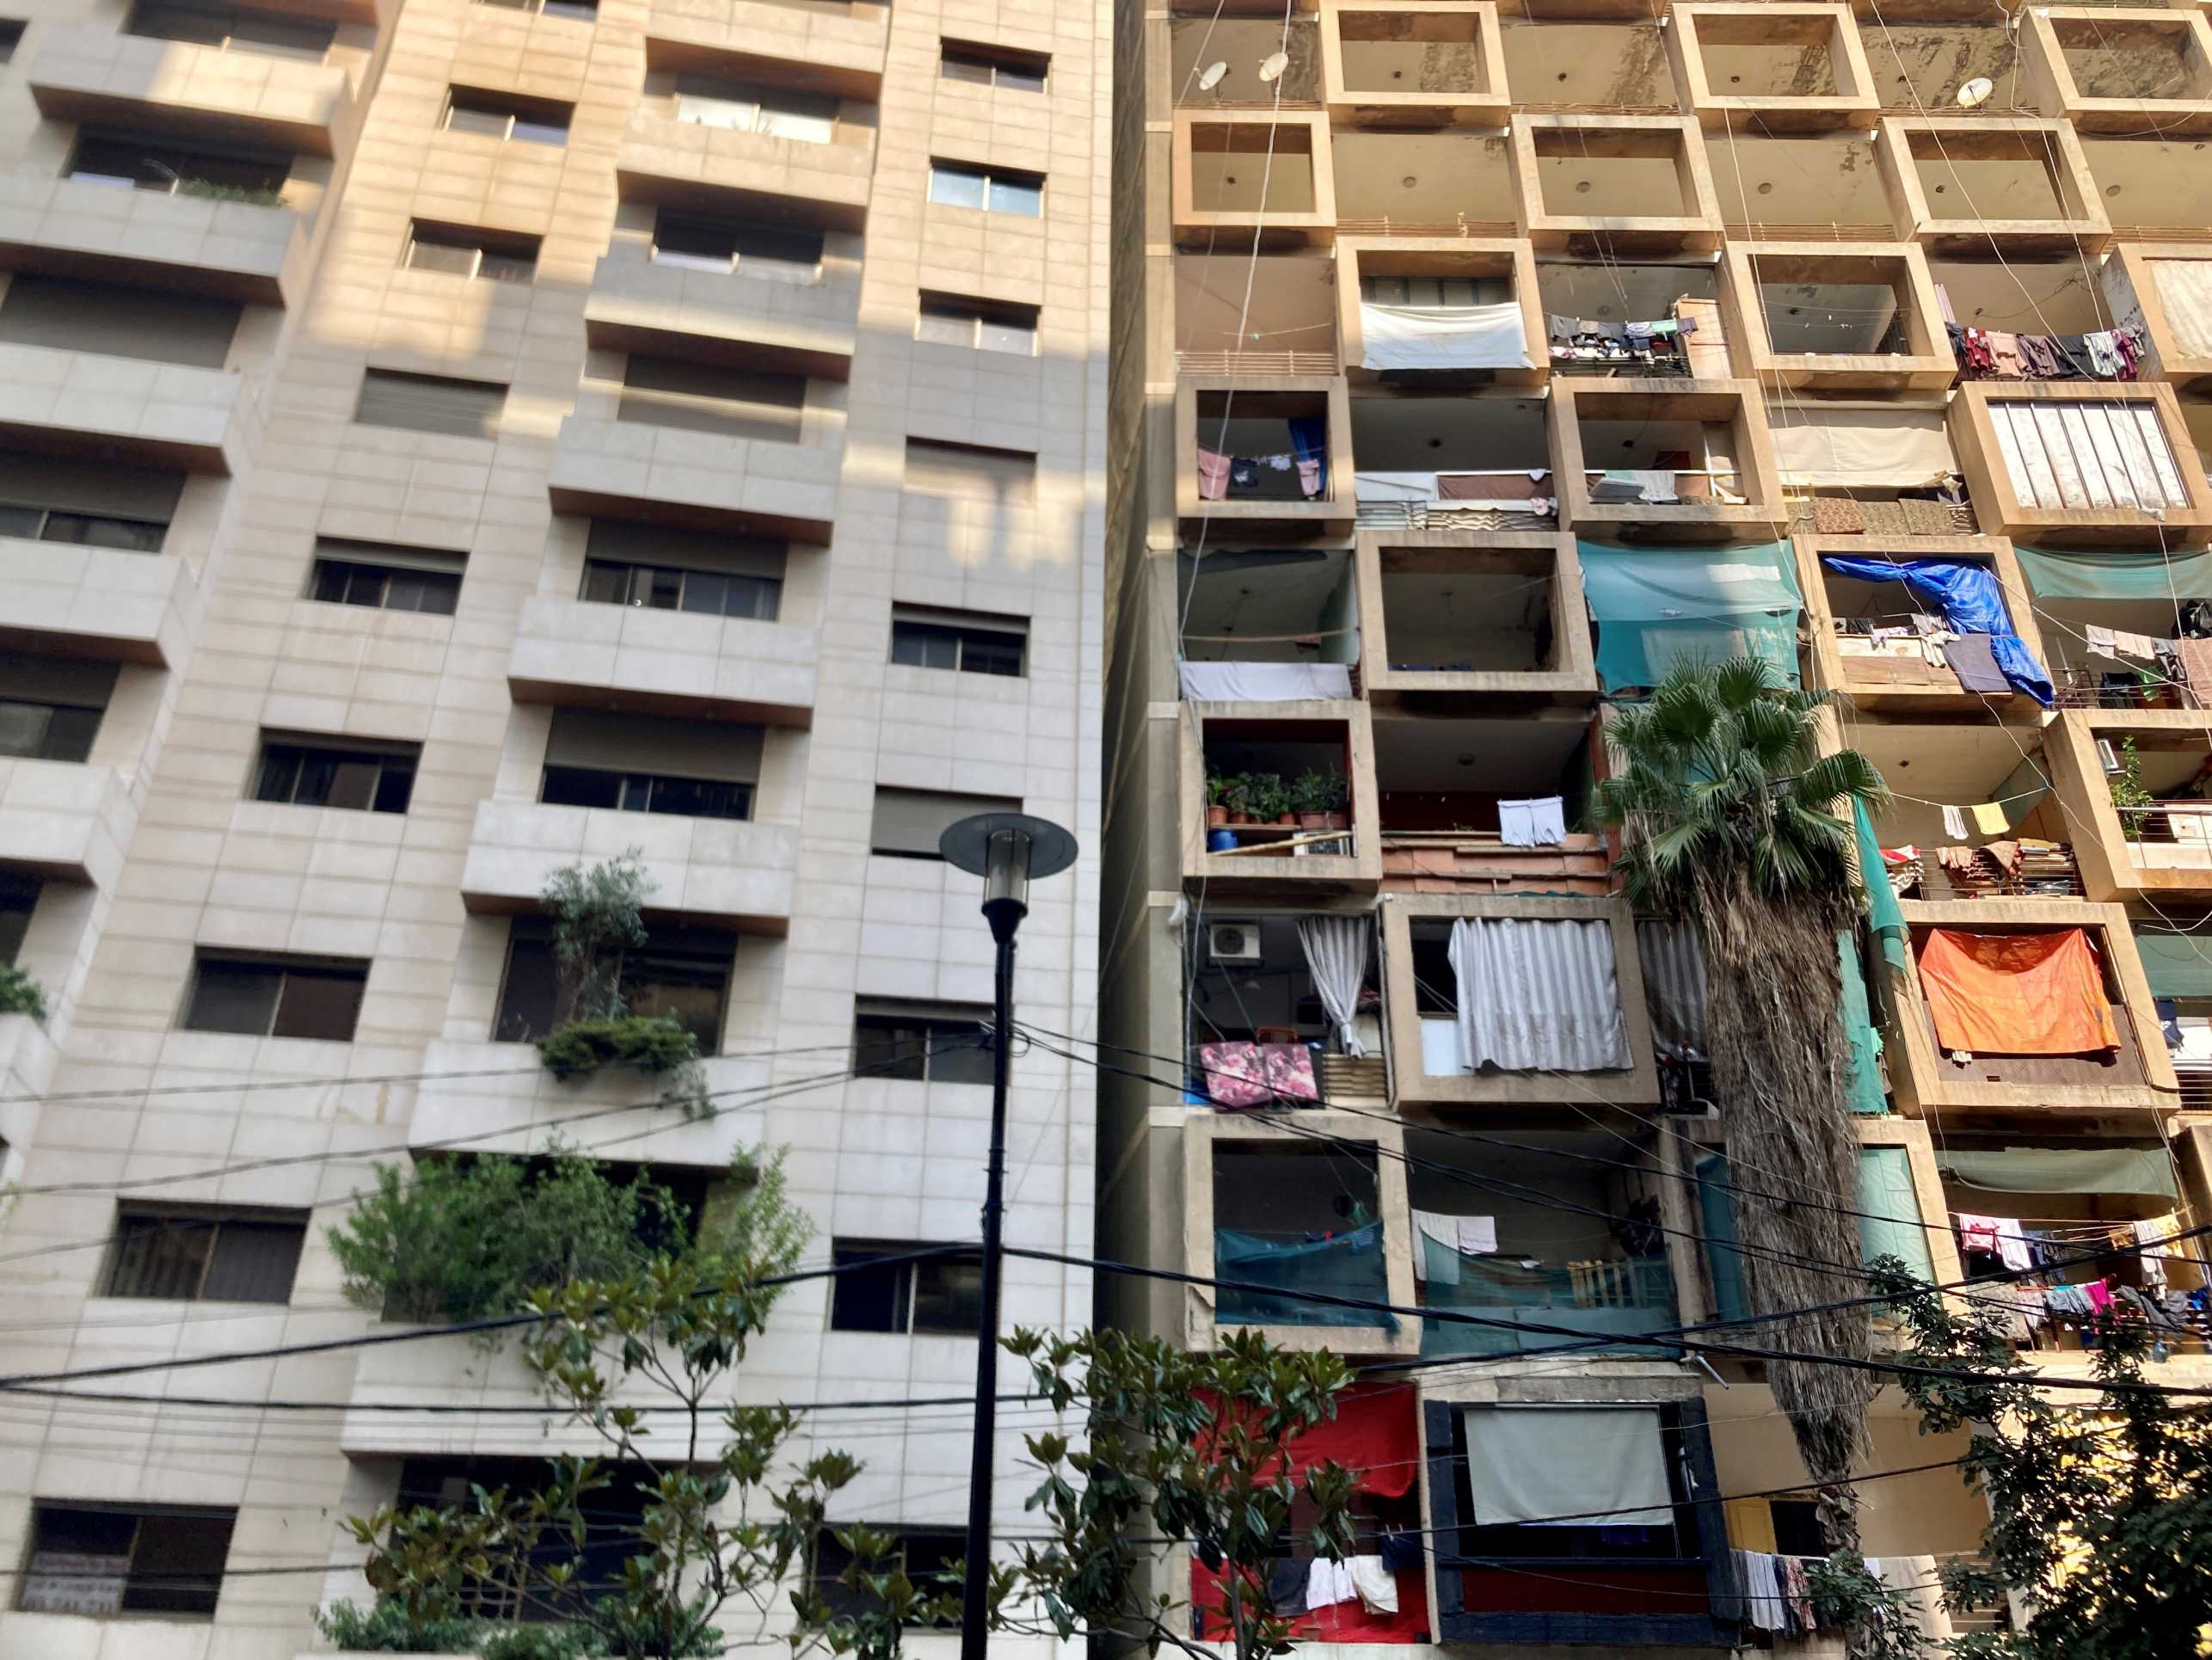 Informal humanitarian housing in Beirut 2022, Source: Bruna Rohling